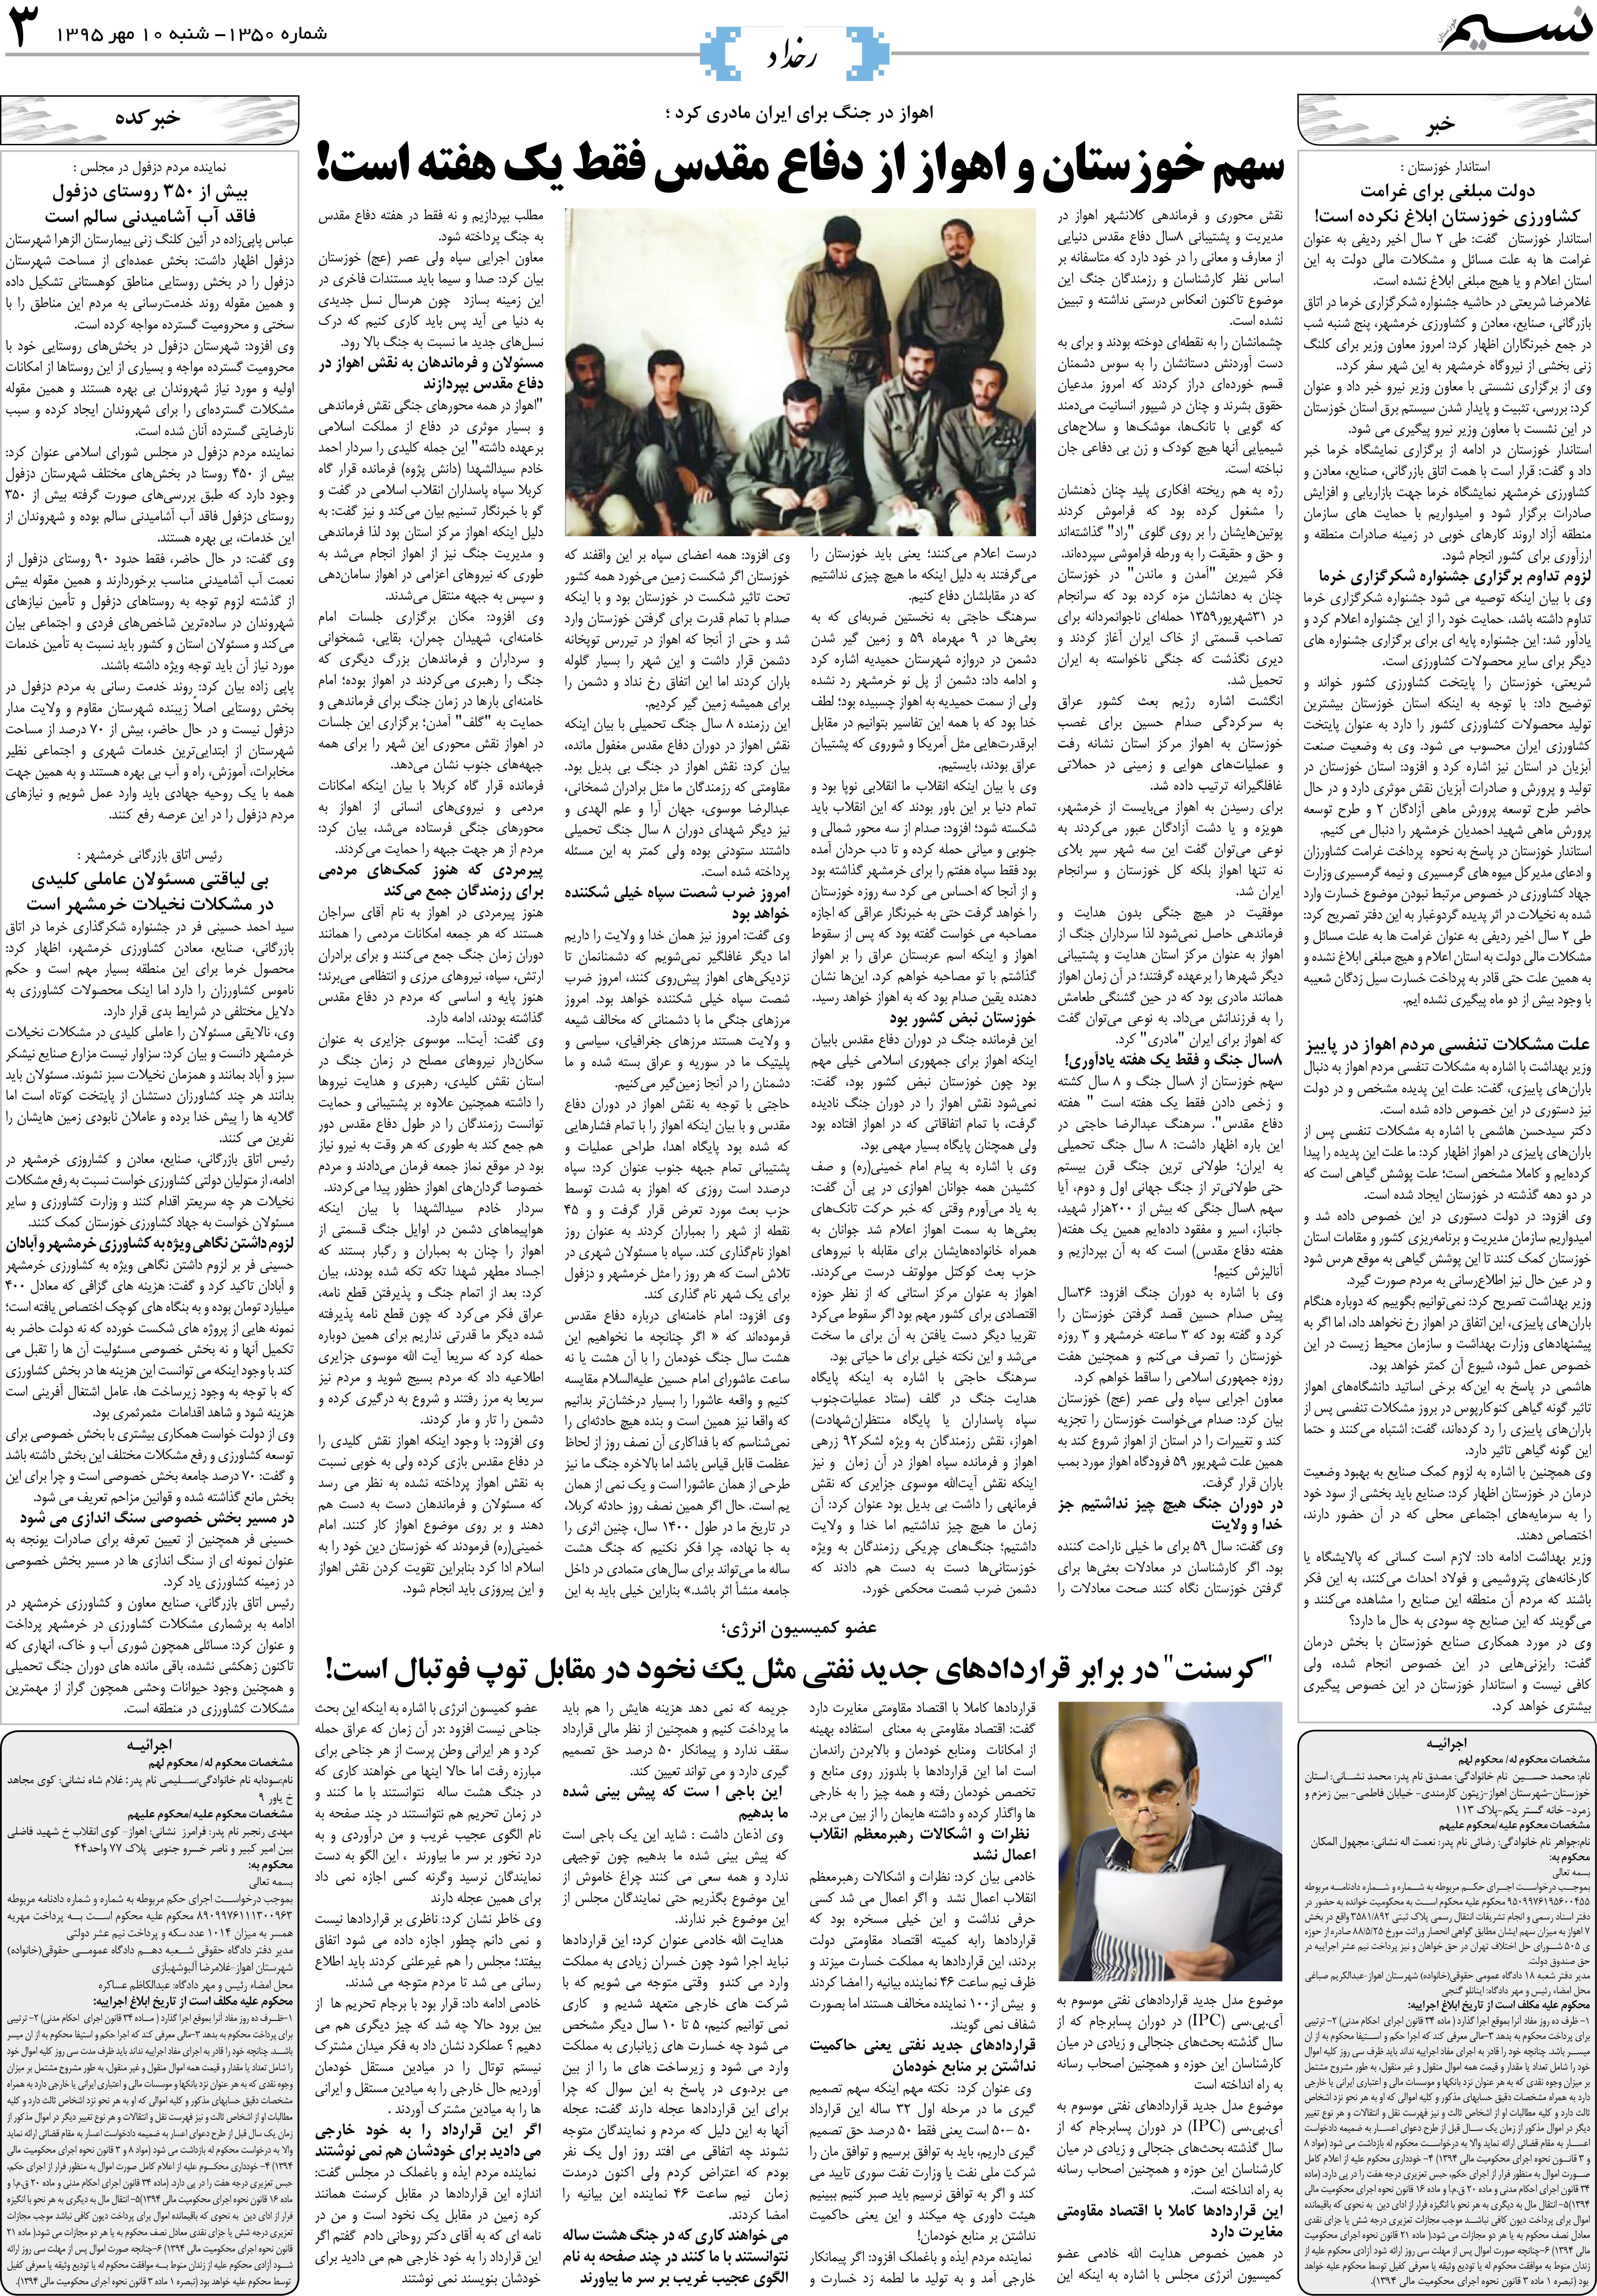 صفحه رخداد روزنامه نسیم شماره 1350